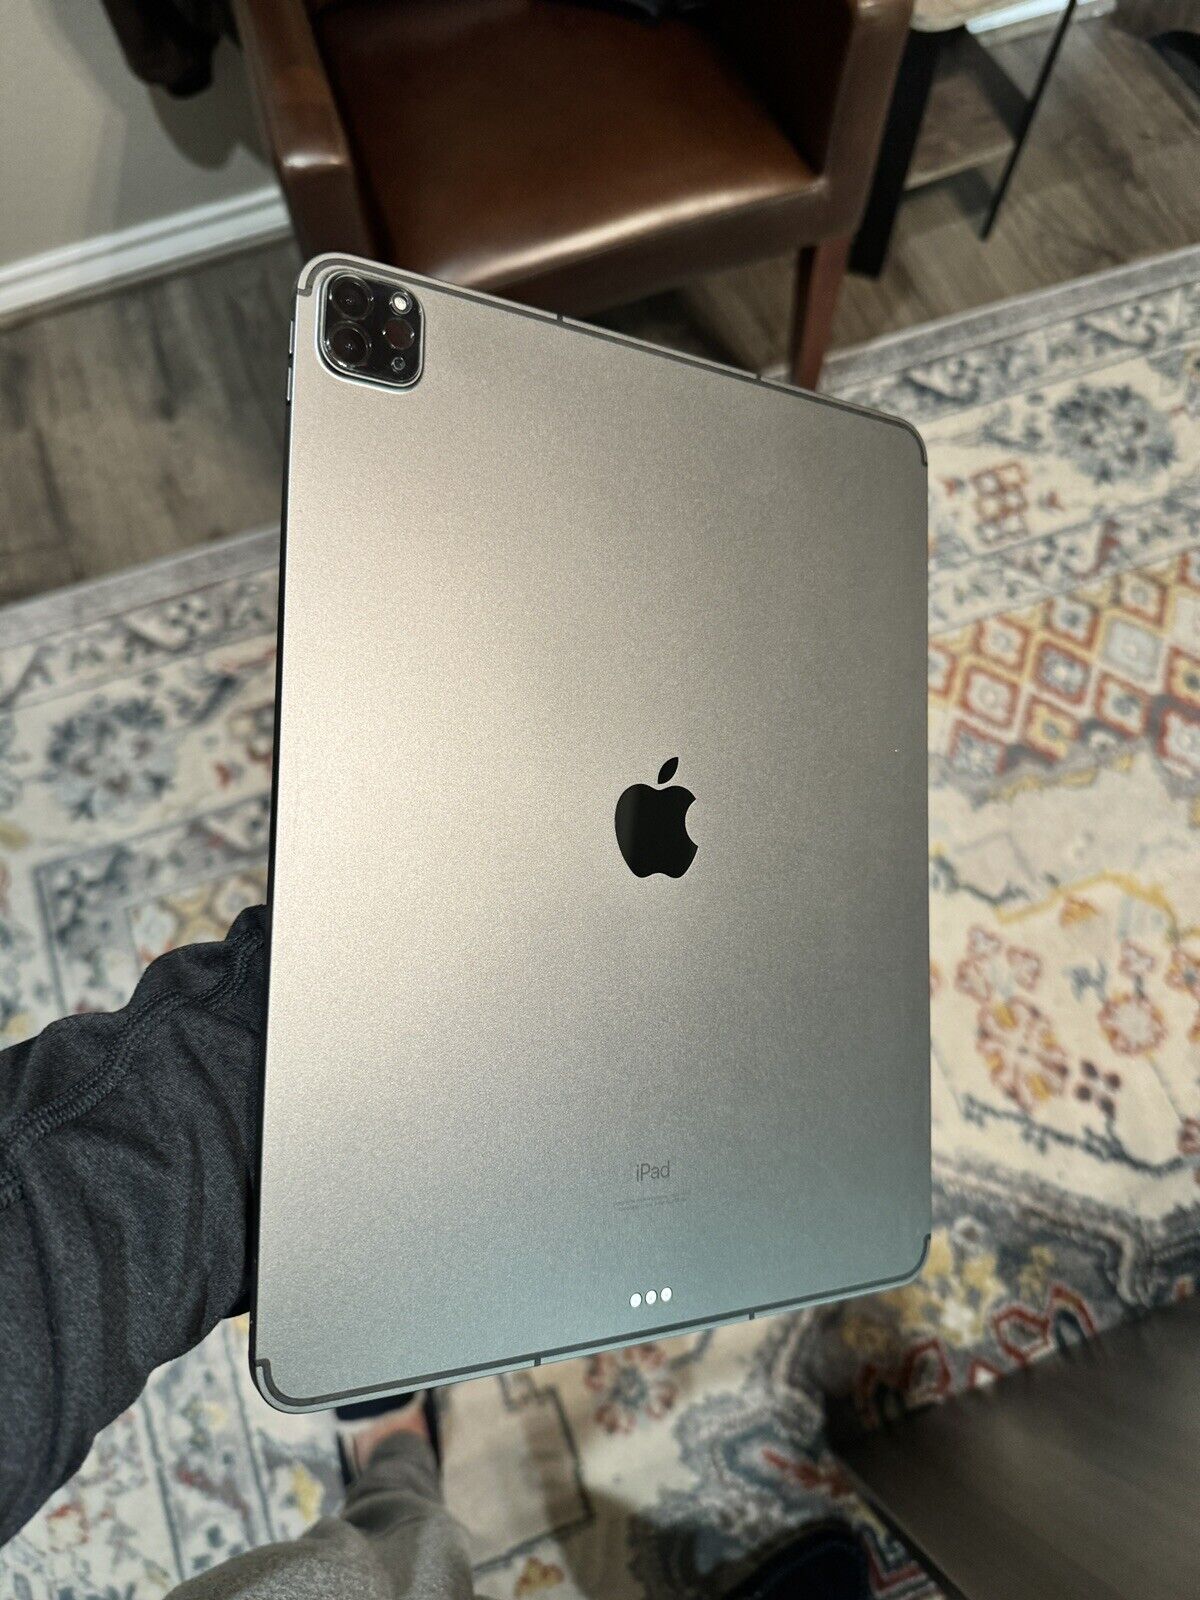 Apple iPad Pro 5th Gen. 256GB, Wi-Fi + 5G (AT&T), 12.9in